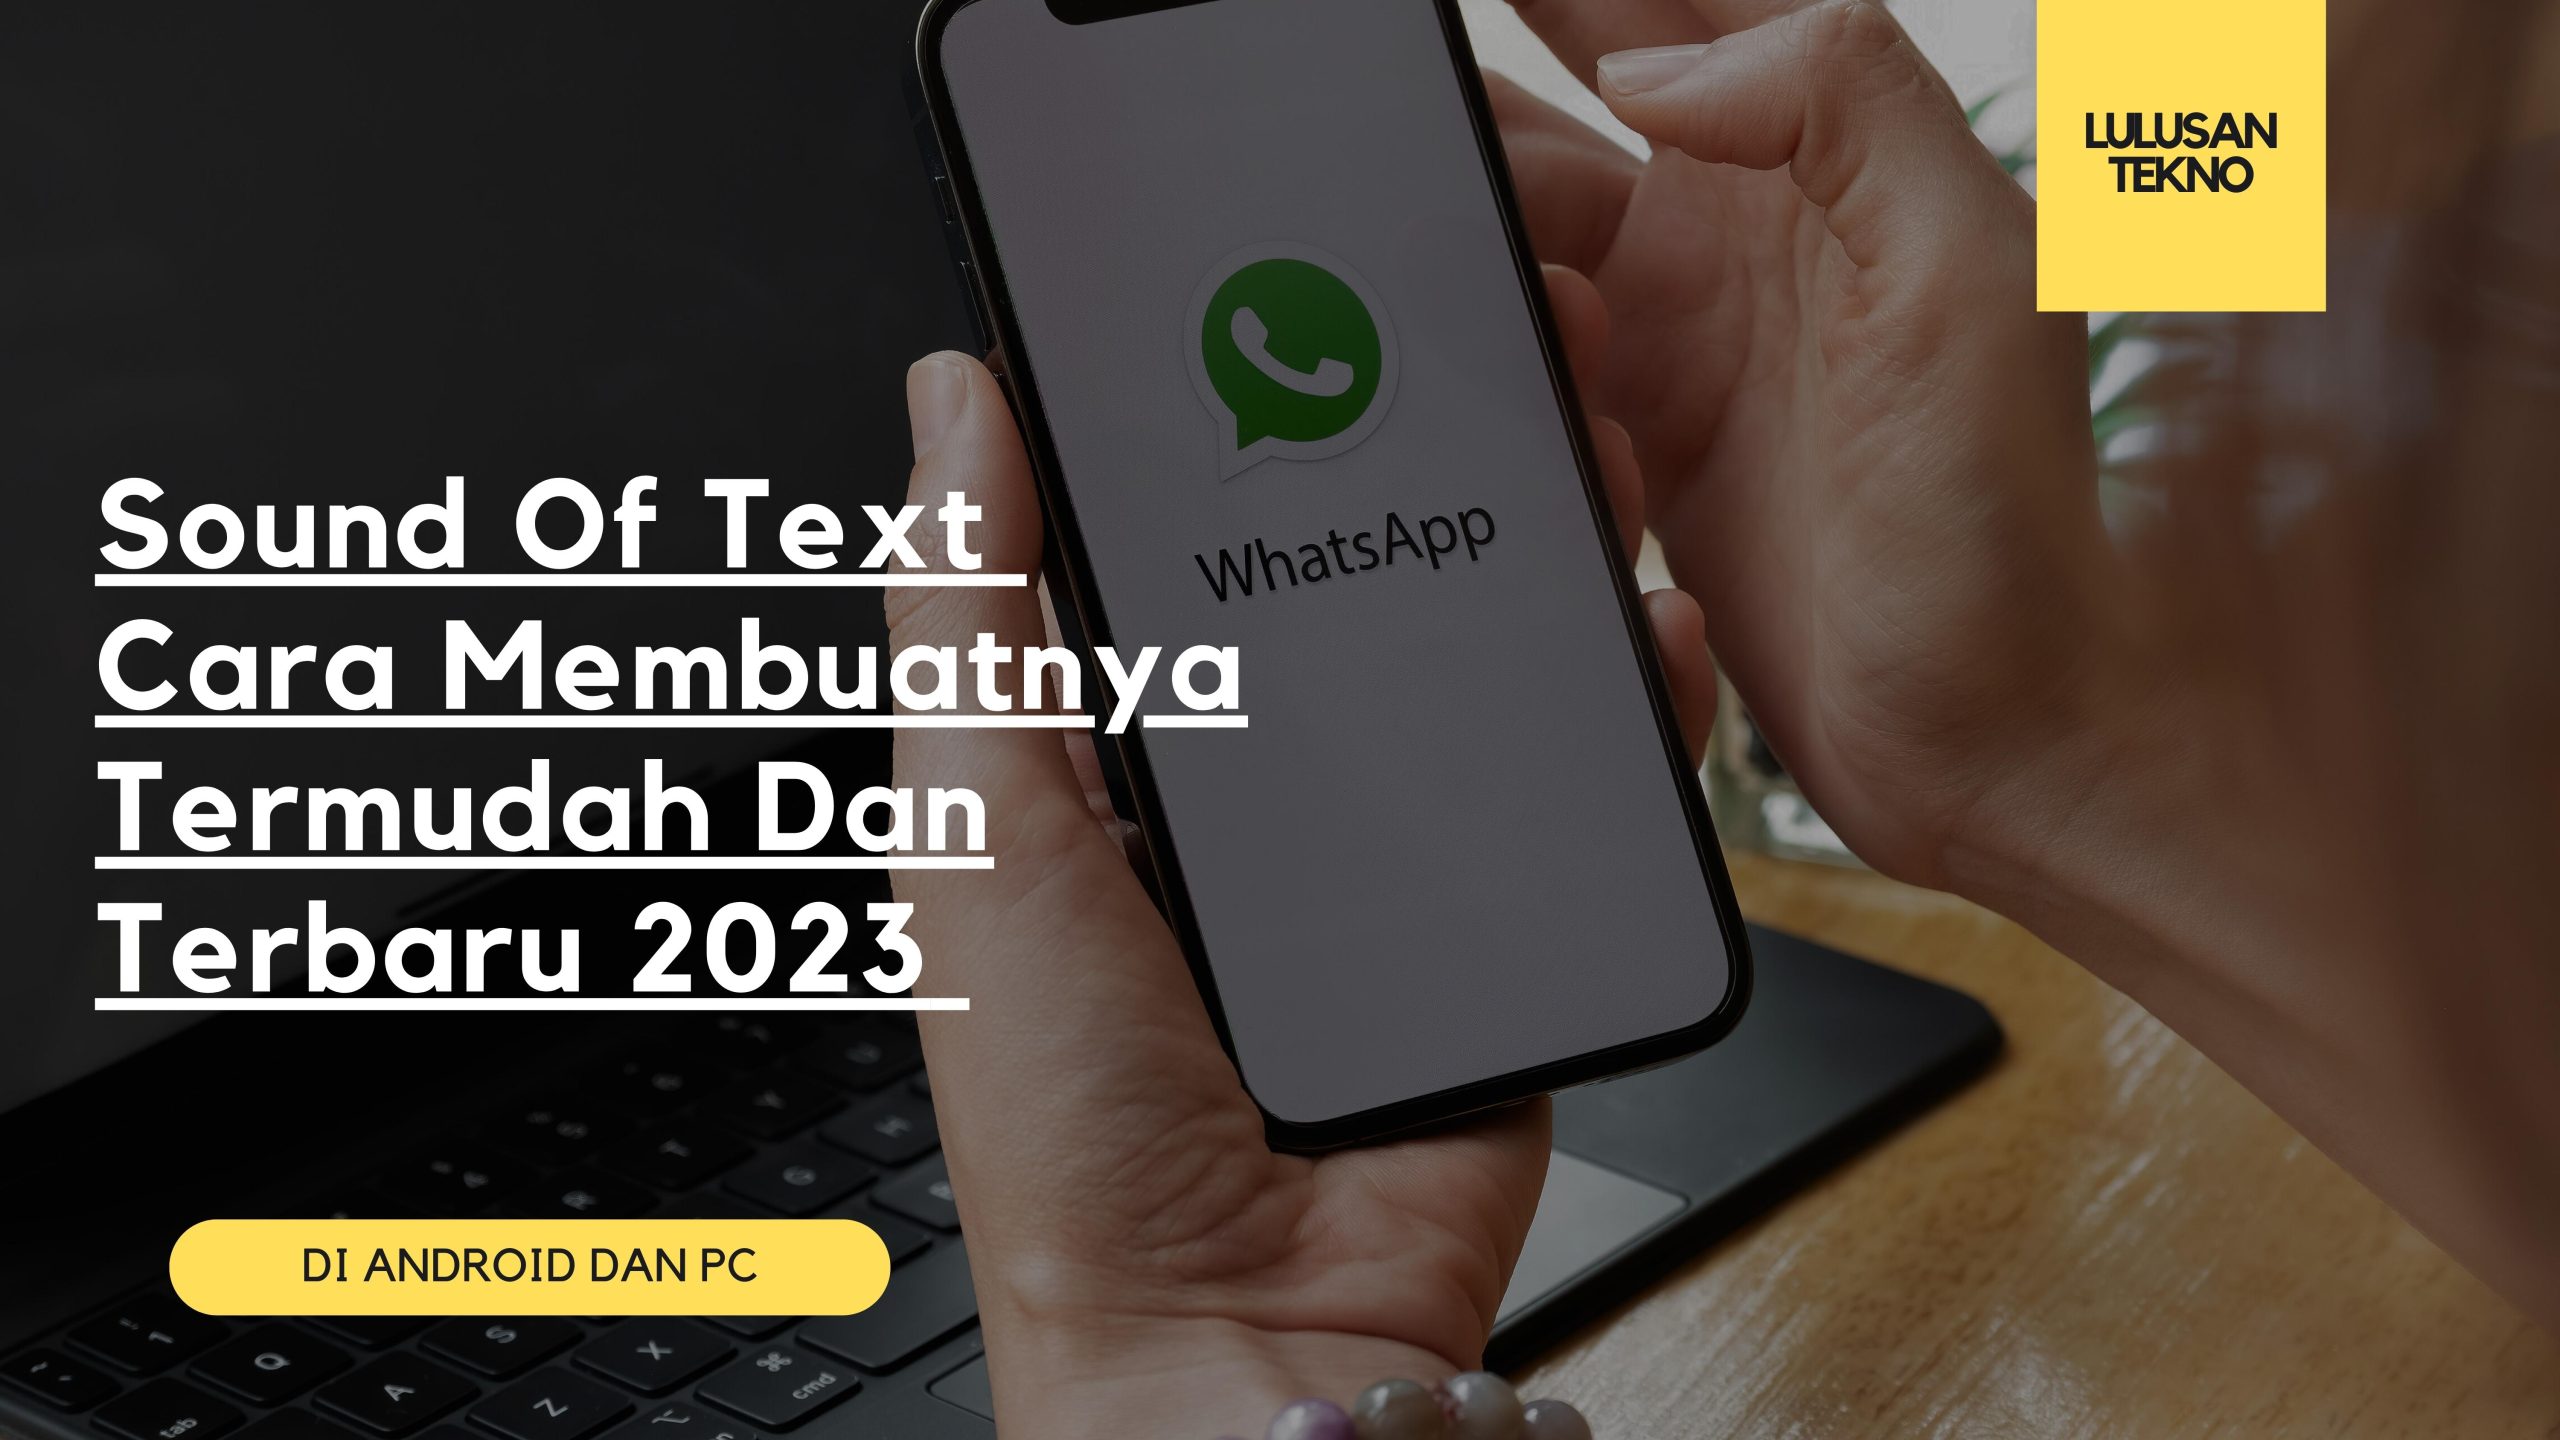 Sound Of Text Cara Membuatnya Termudah Dan Terbaru 2023